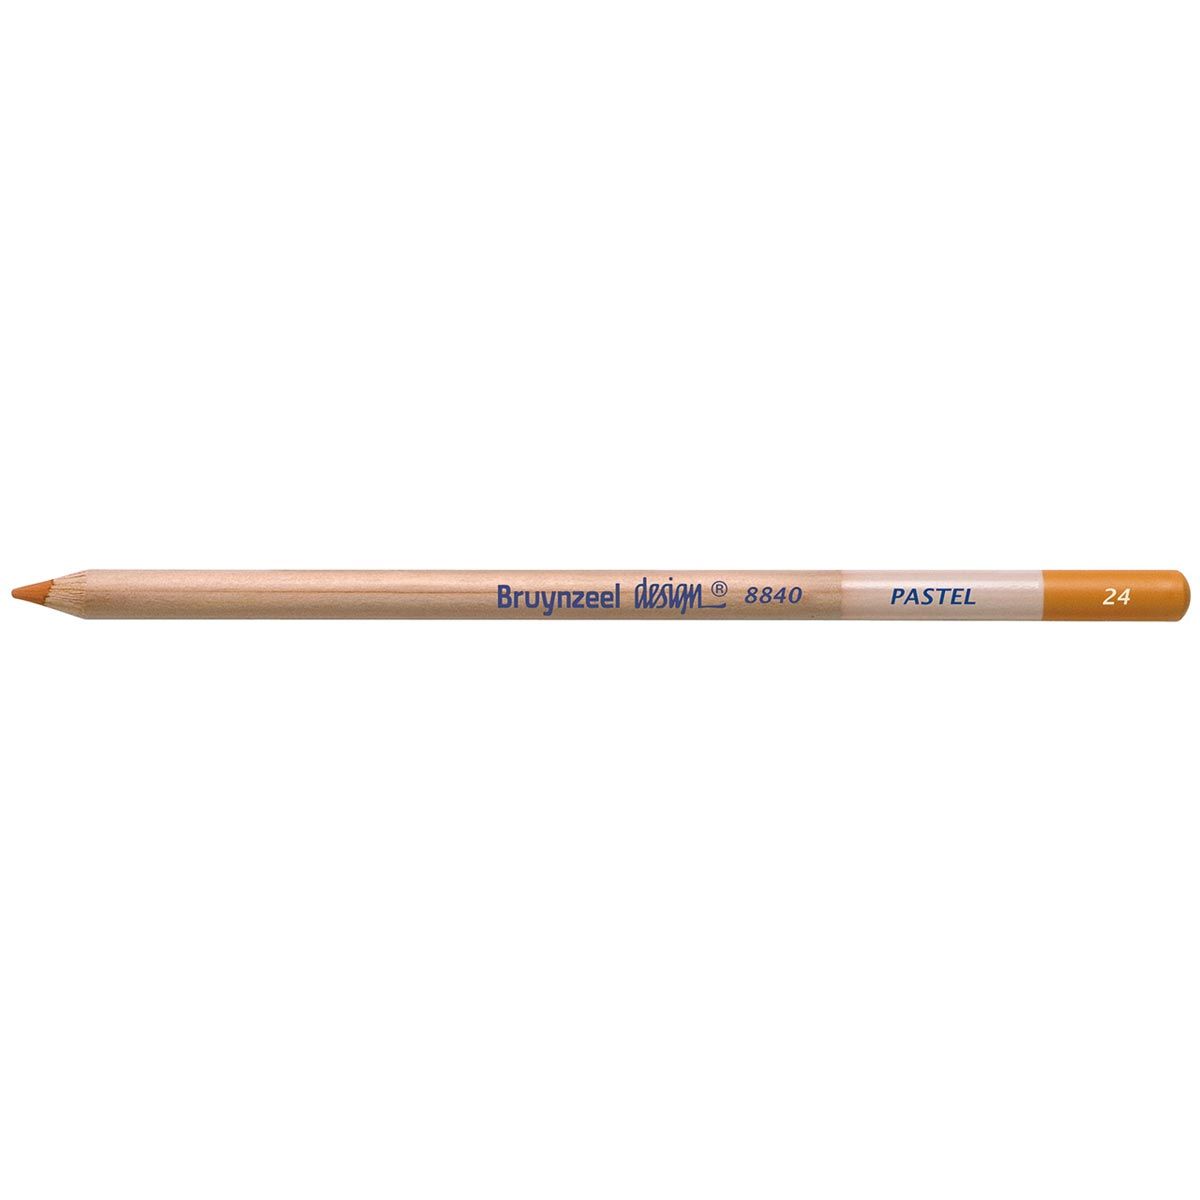 Bruynzeel Design Pastel Pencil - Burnt Sienna 24